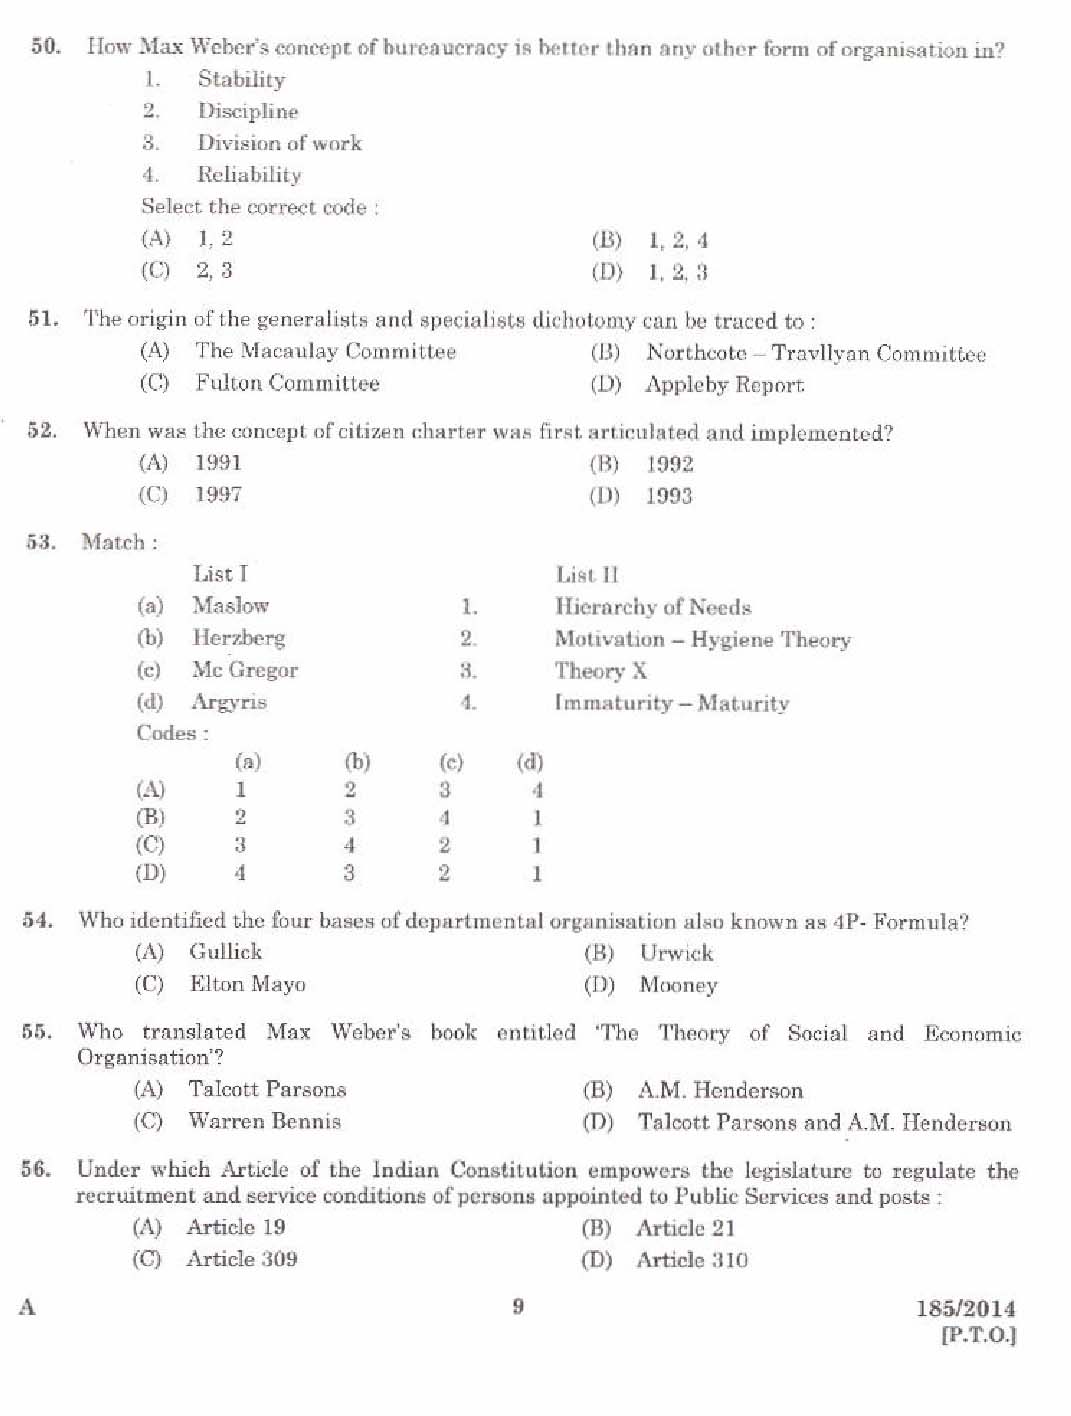 KPSC Lecturer in Public Administration Exam 1852014 7